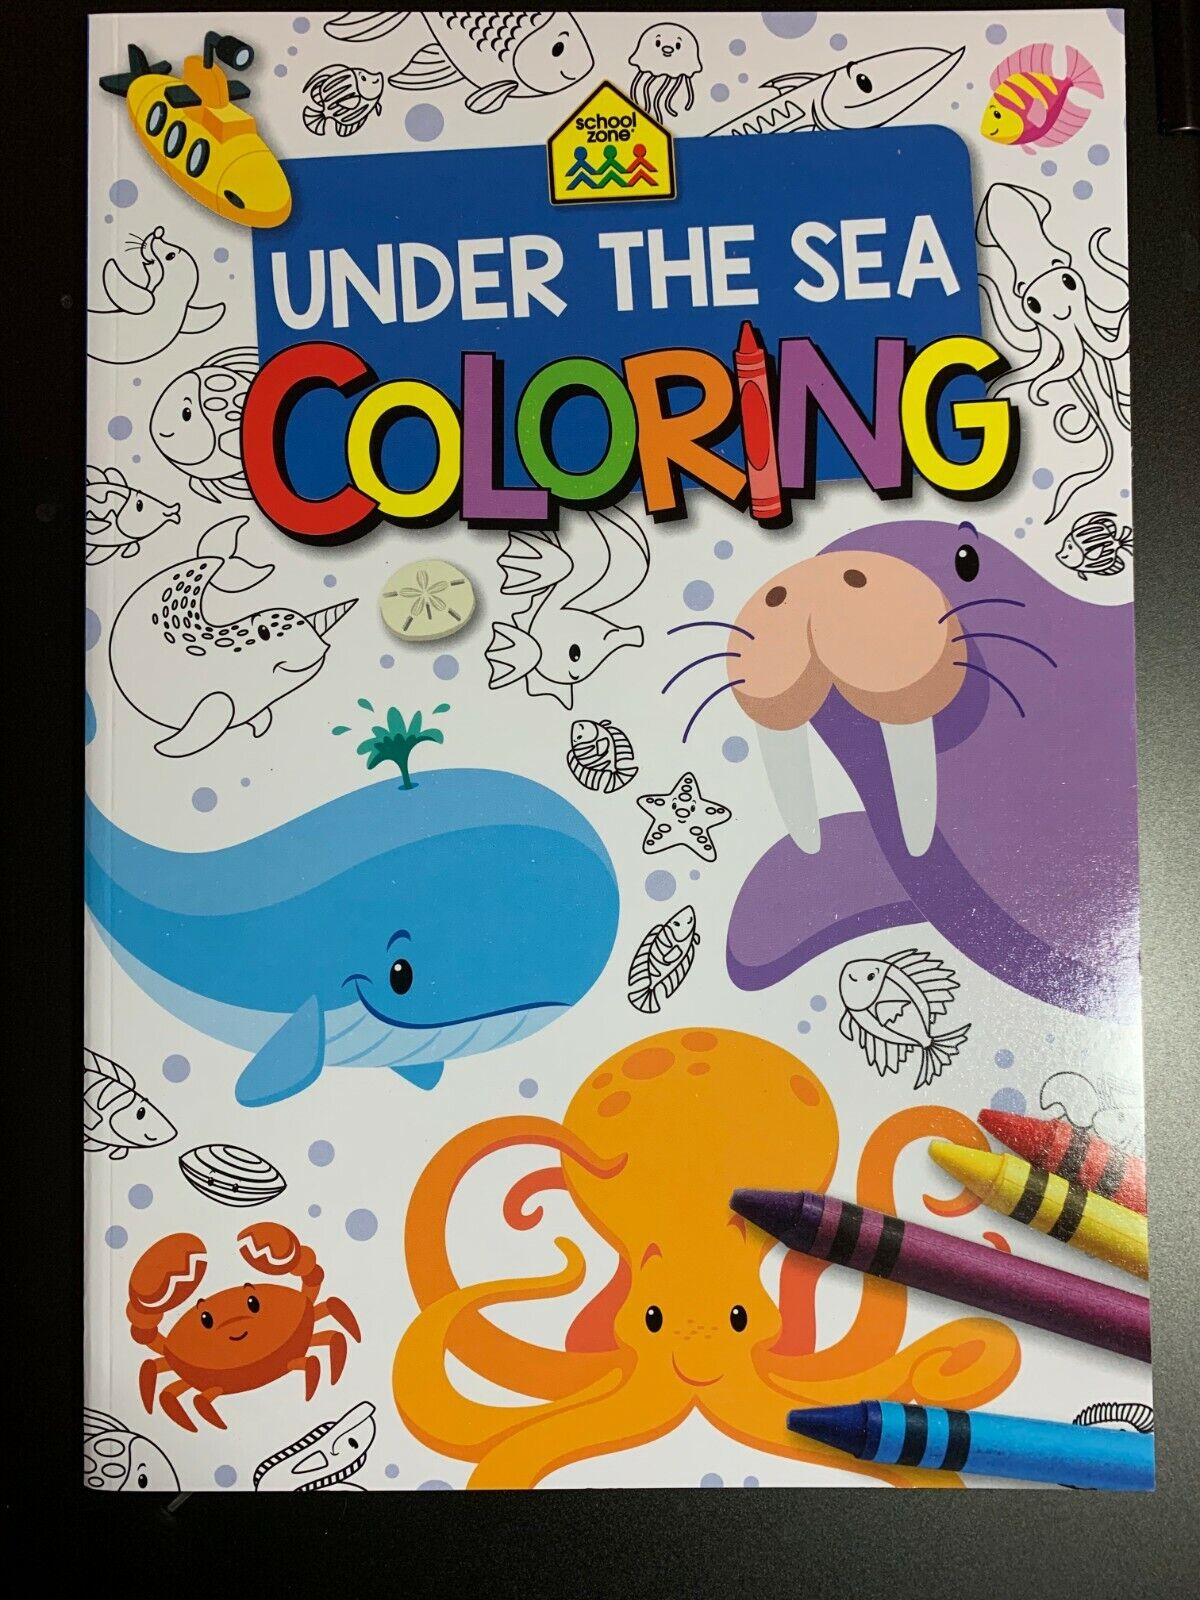 School zone under the sea coloring book for kids develop fine motor skills fun